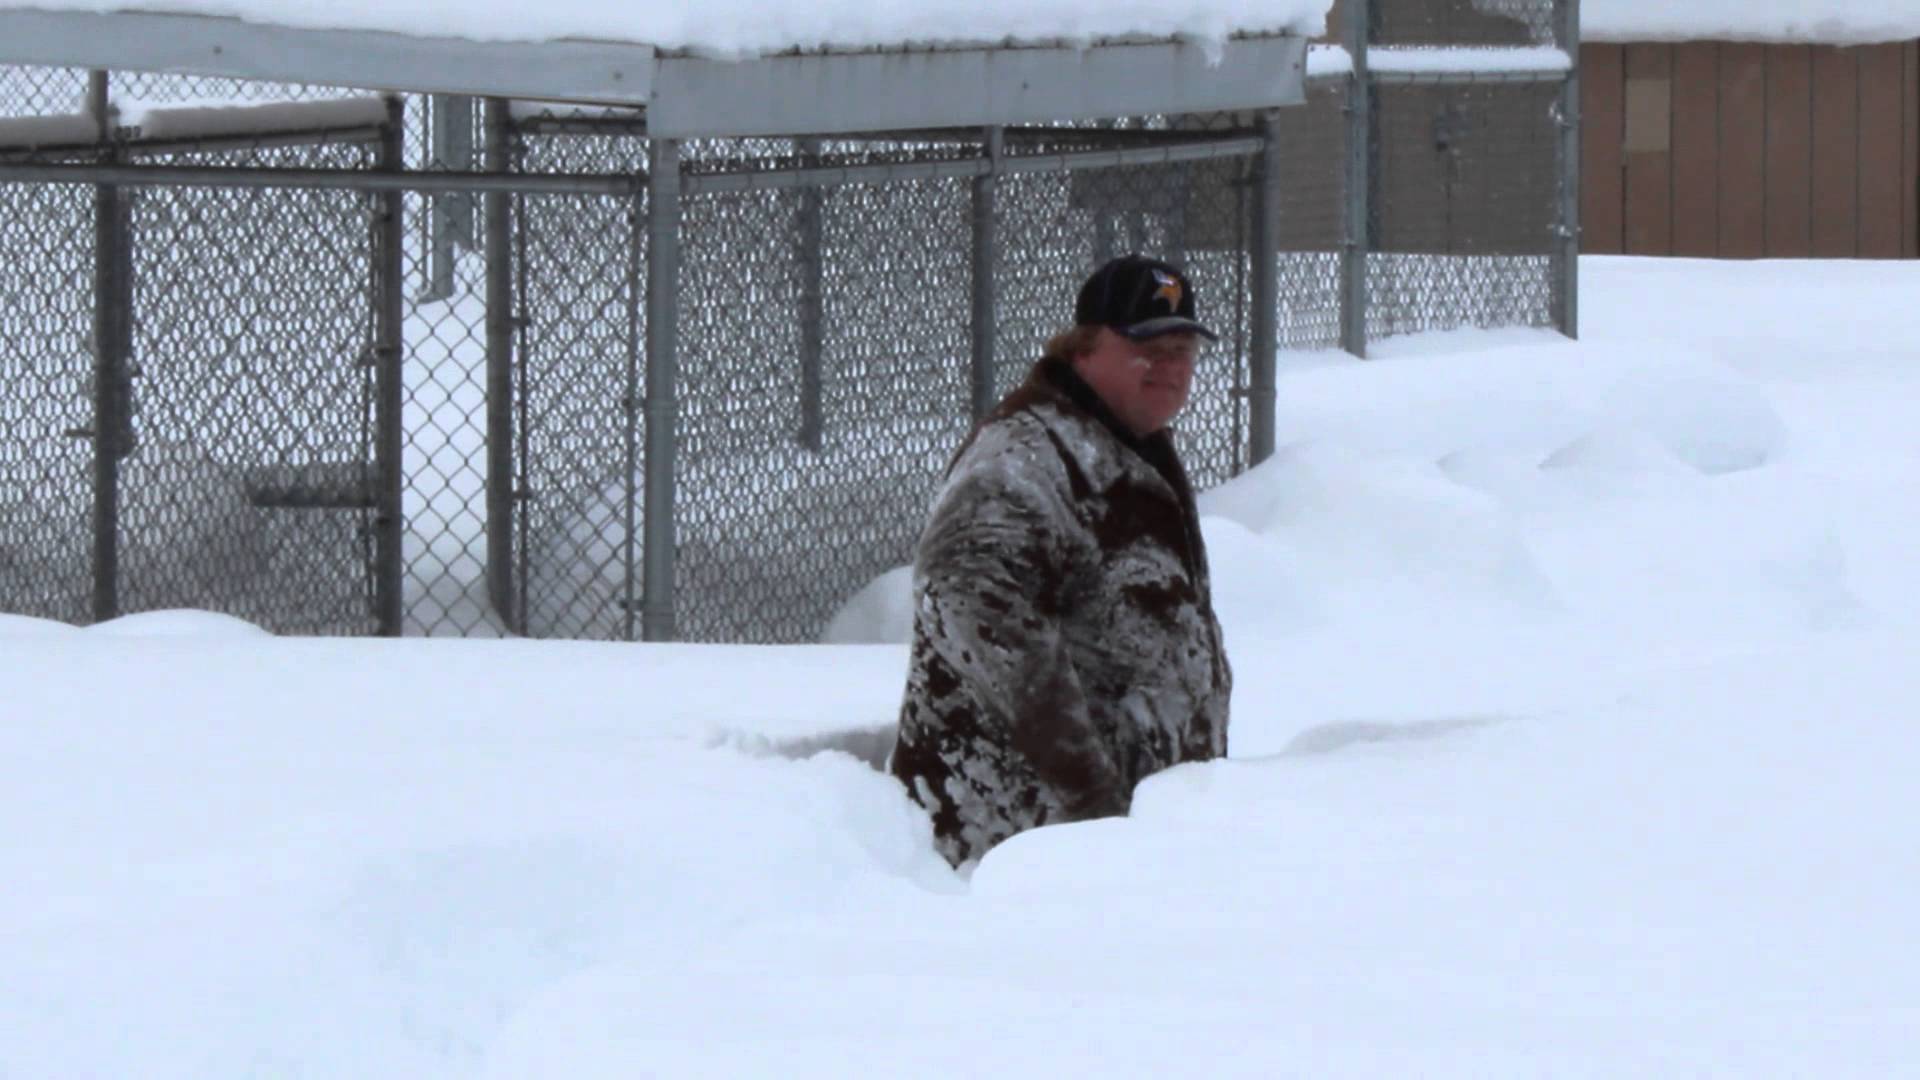 Fat guy struggles in snow - YouTube